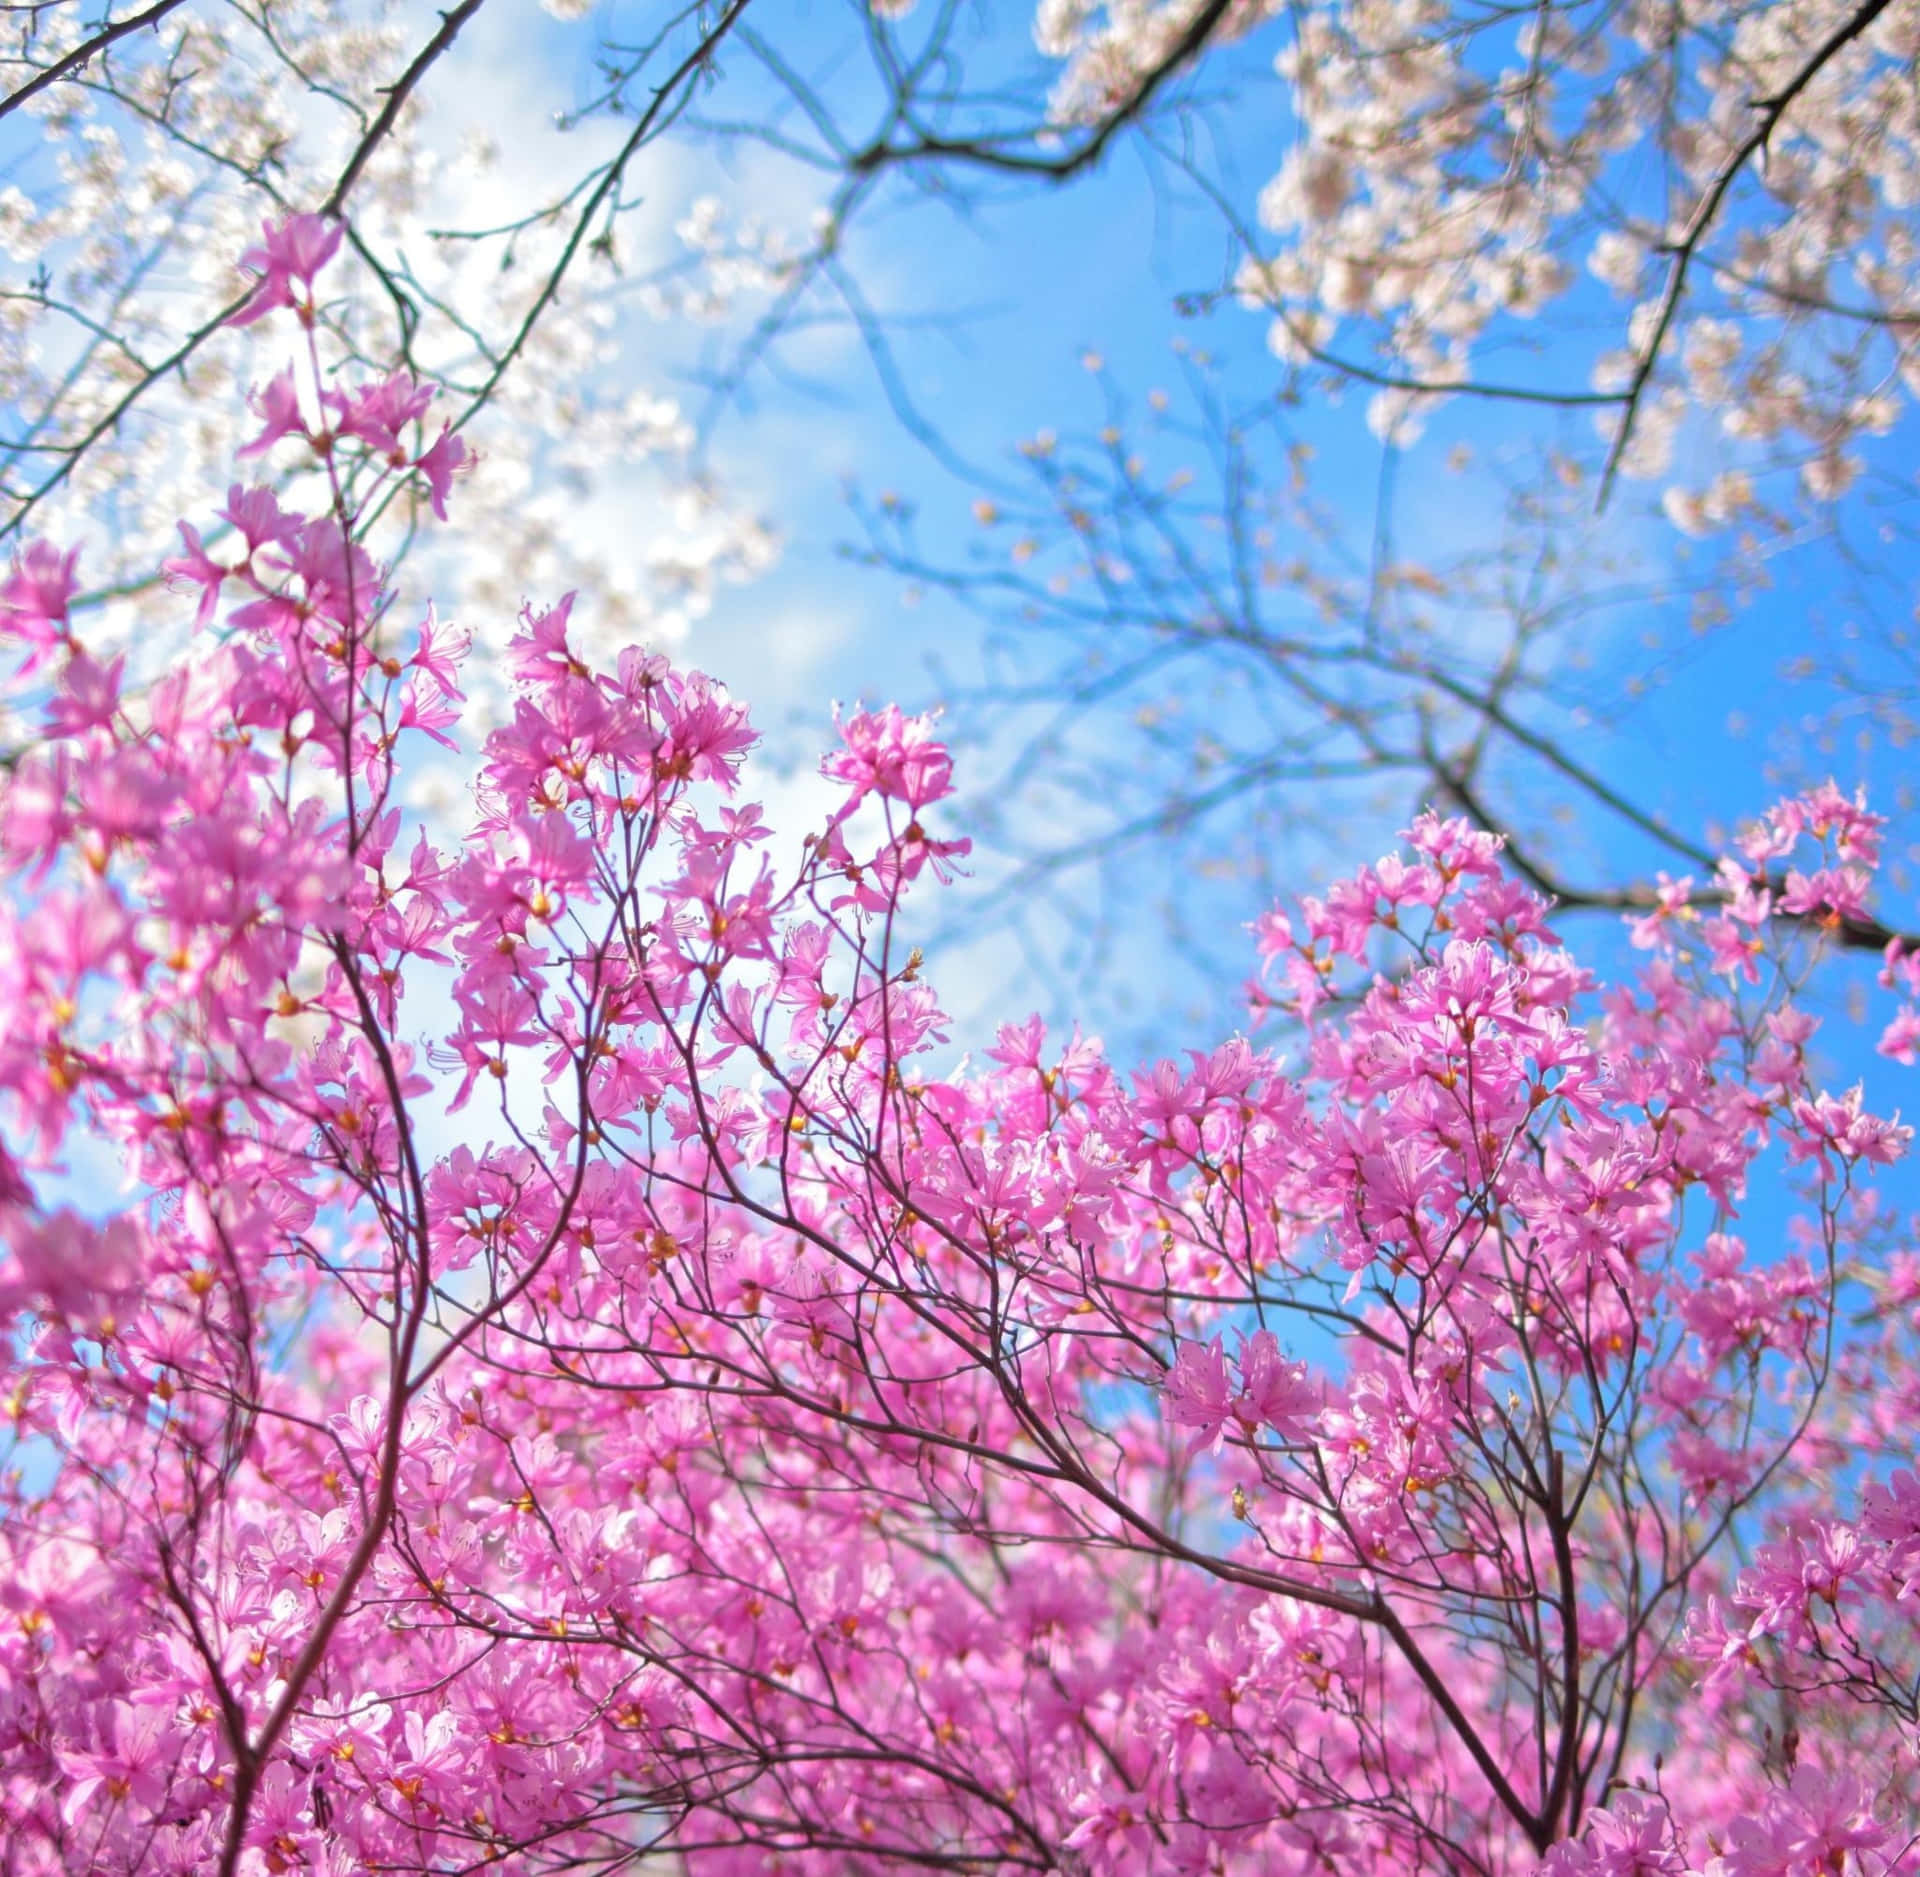 Ungráfico Colorido De Una Pintura De Paisaje Que Muestra Un Brillante Día De Primavera En Un Huerto De Manzanas En Flor. Fondo de pantalla